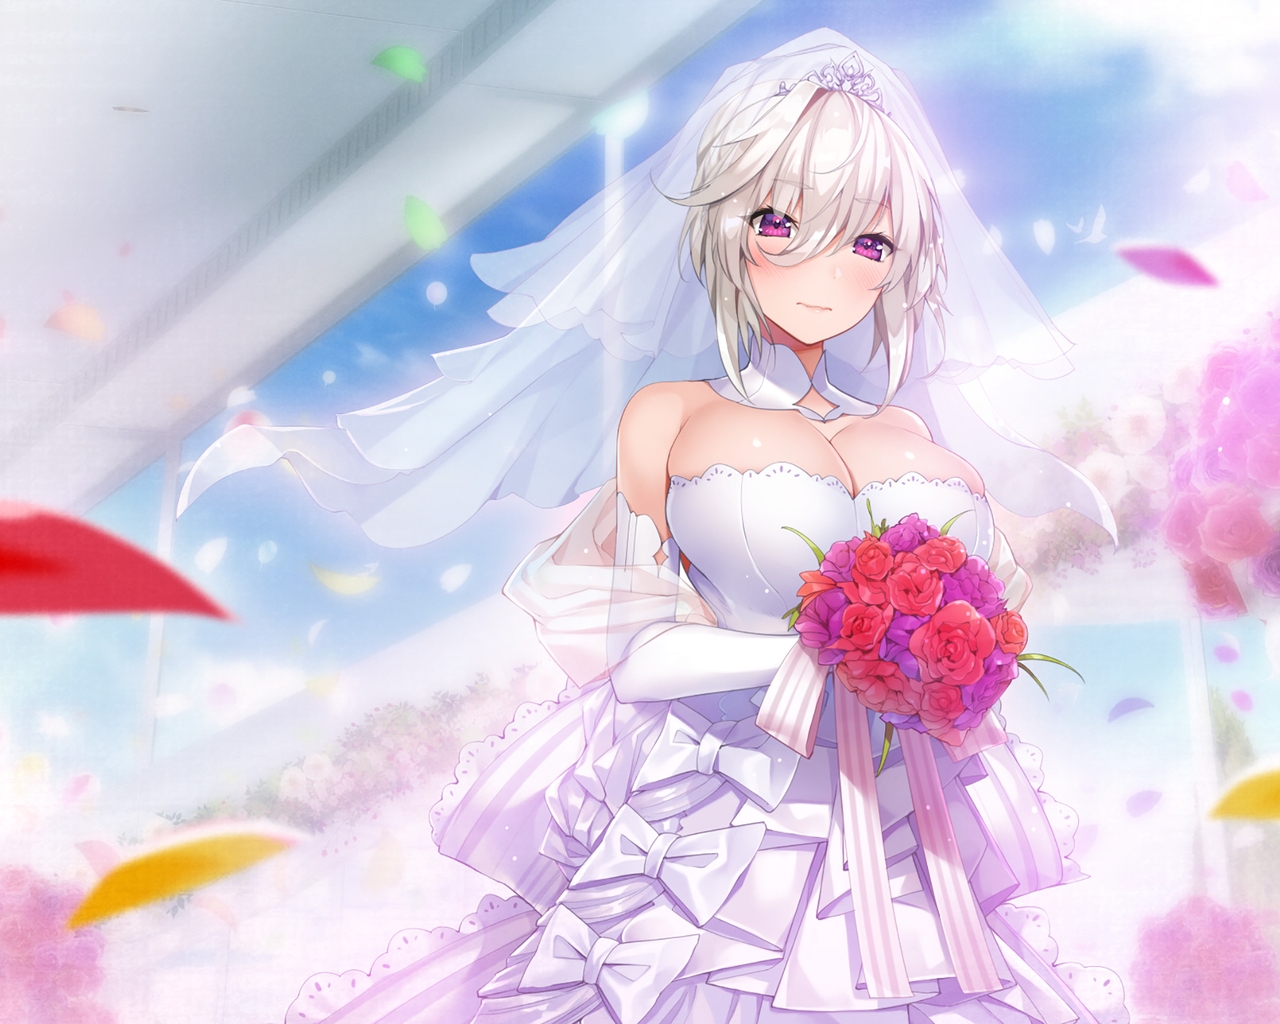 Картинка: Девушка, платье, свадьба, аниме, букет, цветы, листья, грудь